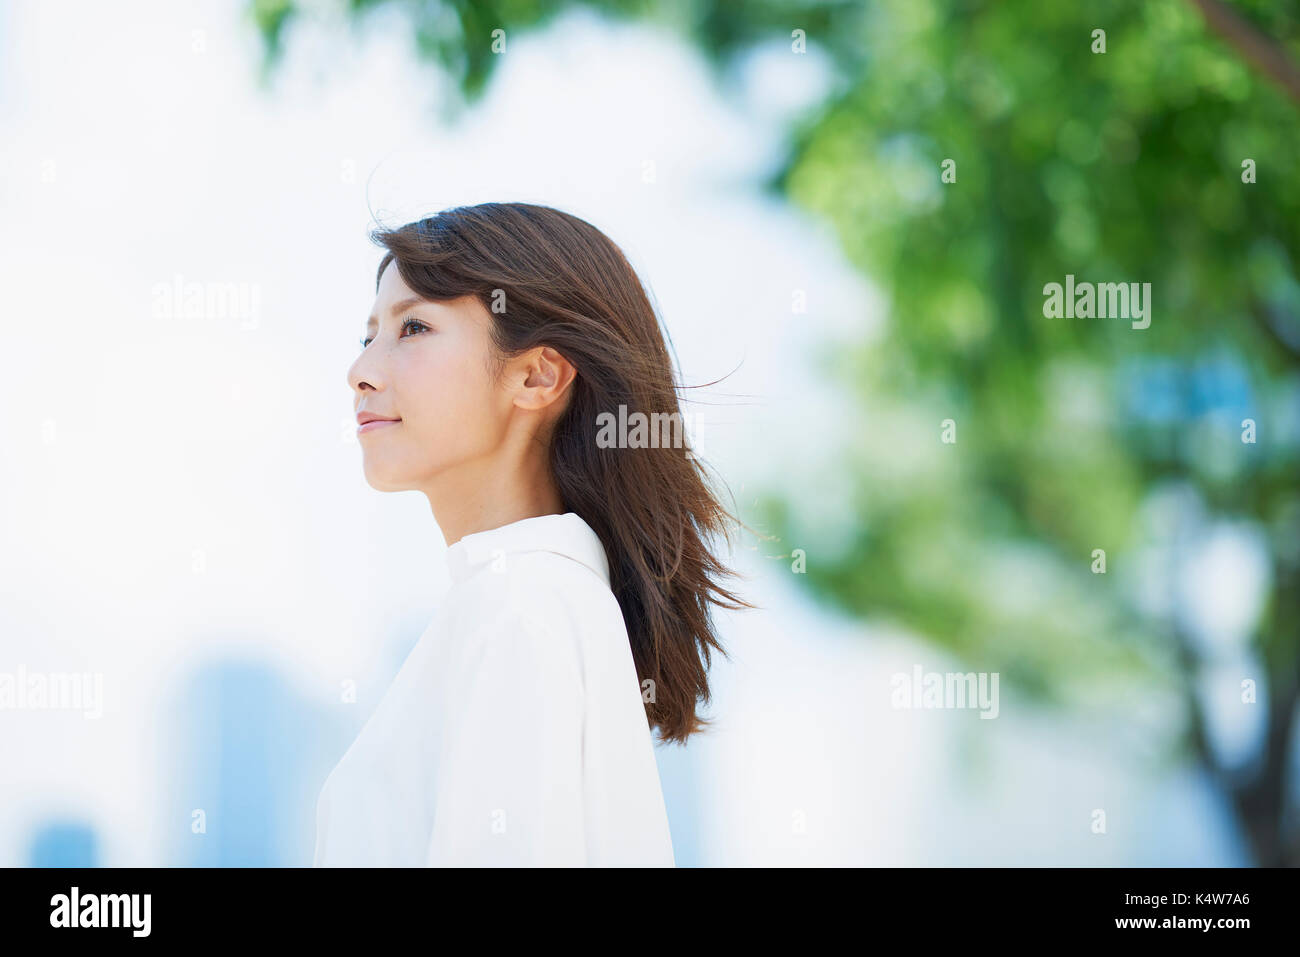 Porträt der jungen japanischen Frau und frischem Grün, Tokio, Japan Stockfoto